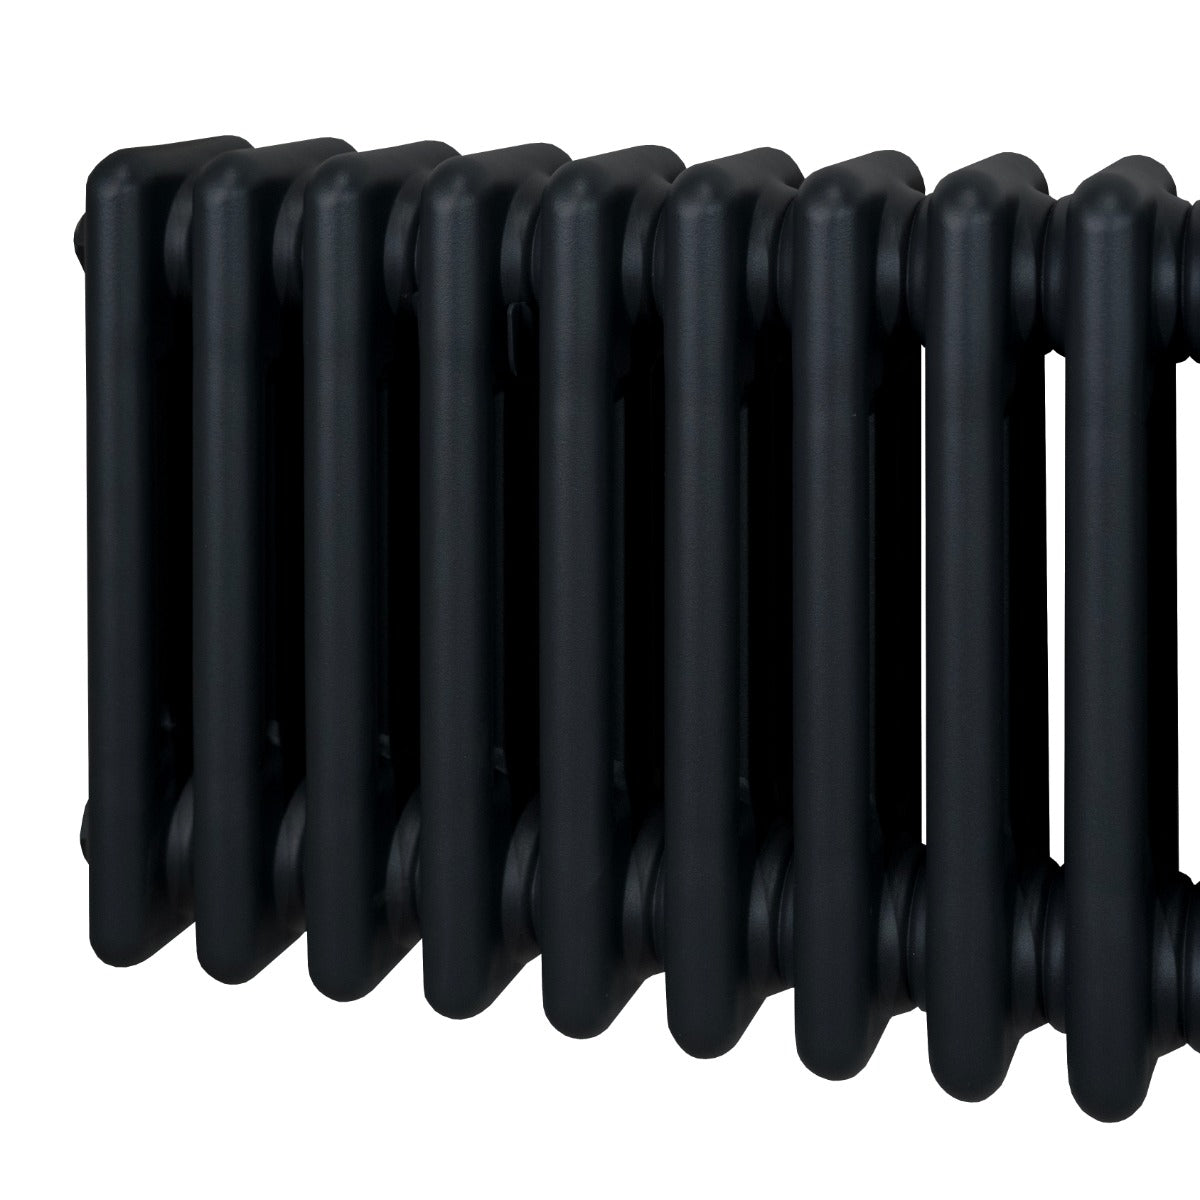 Radiateur Traditionnel à Triple Colonne – 600 x 1012 mm – Noir